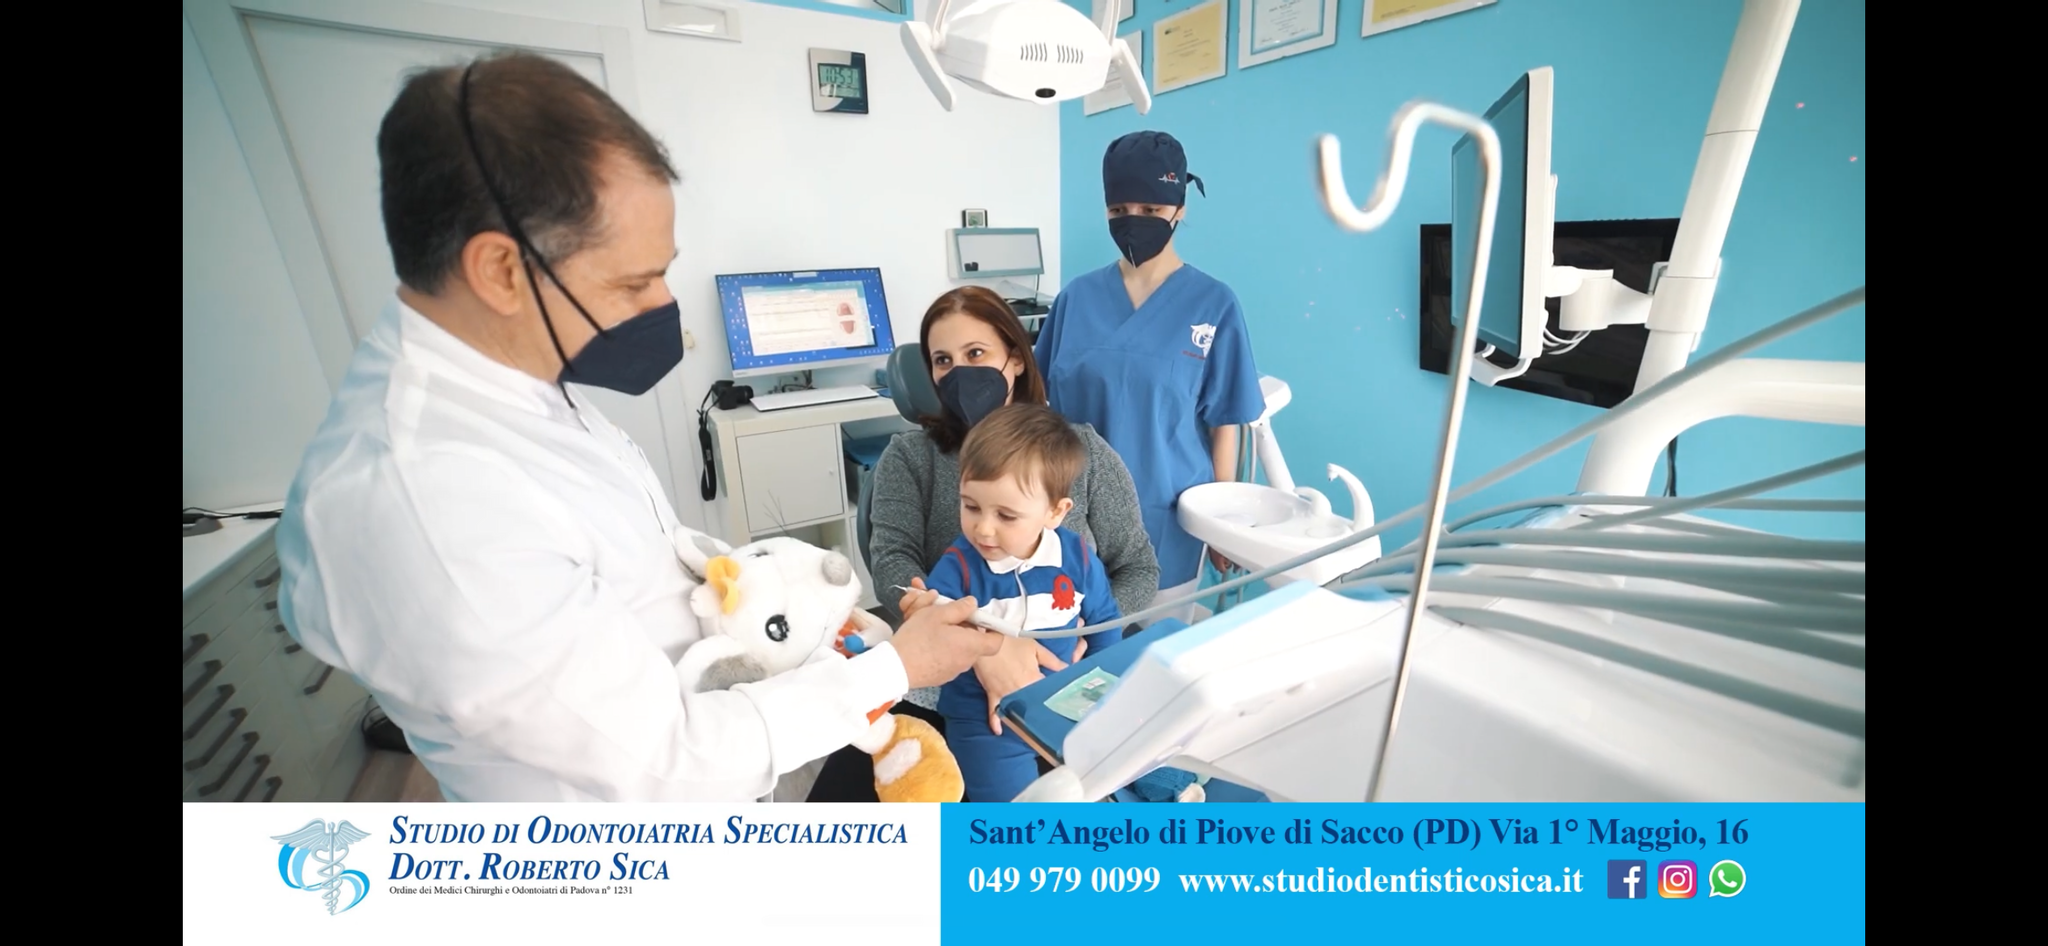 Studio dentistico sica immagine 1